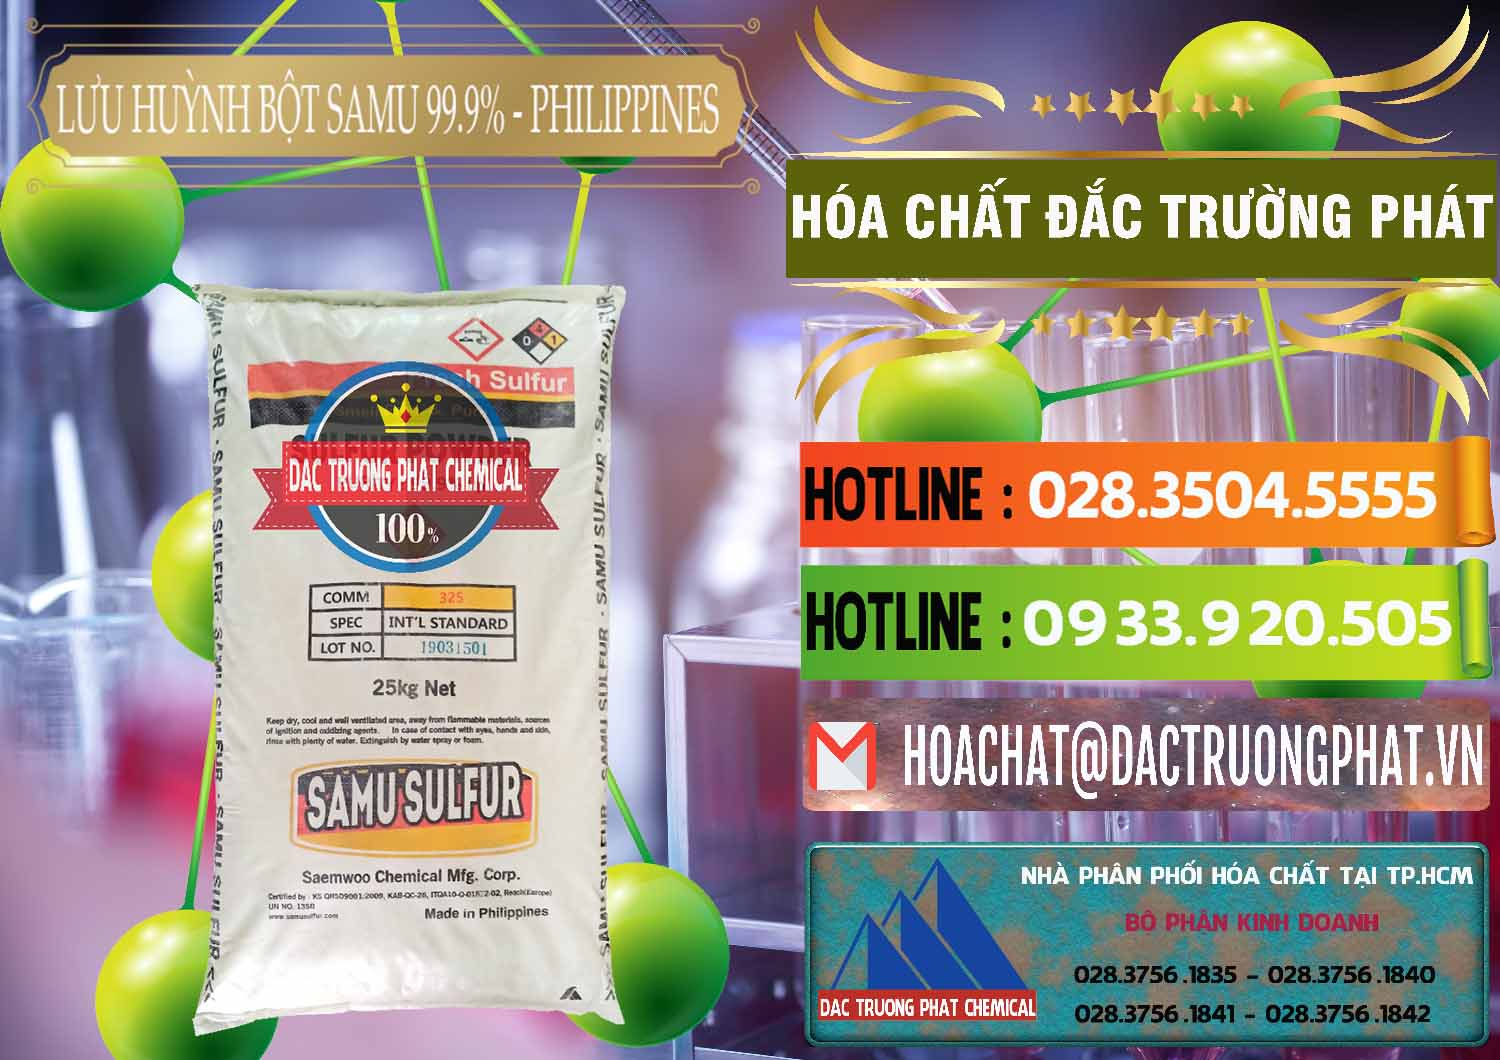 Cty kinh doanh & bán Lưu huỳnh Bột - Sulfur Powder Samu Philippines - 0201 - Chuyên cung ứng - phân phối hóa chất tại TP.HCM - cungcaphoachat.com.vn